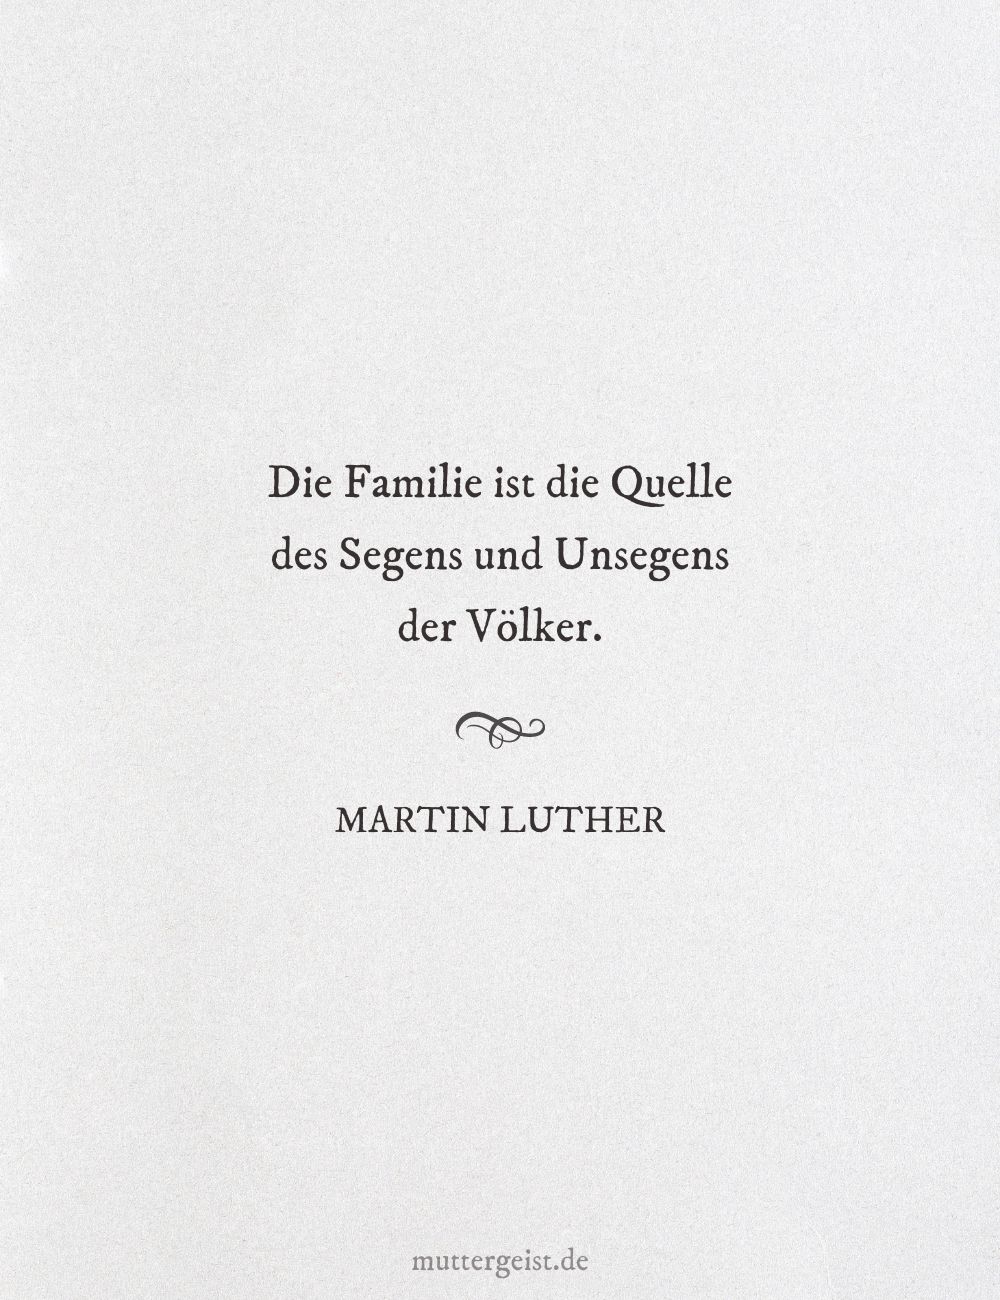 Martin Luthers weise Worte über die Bedeutung der Familie